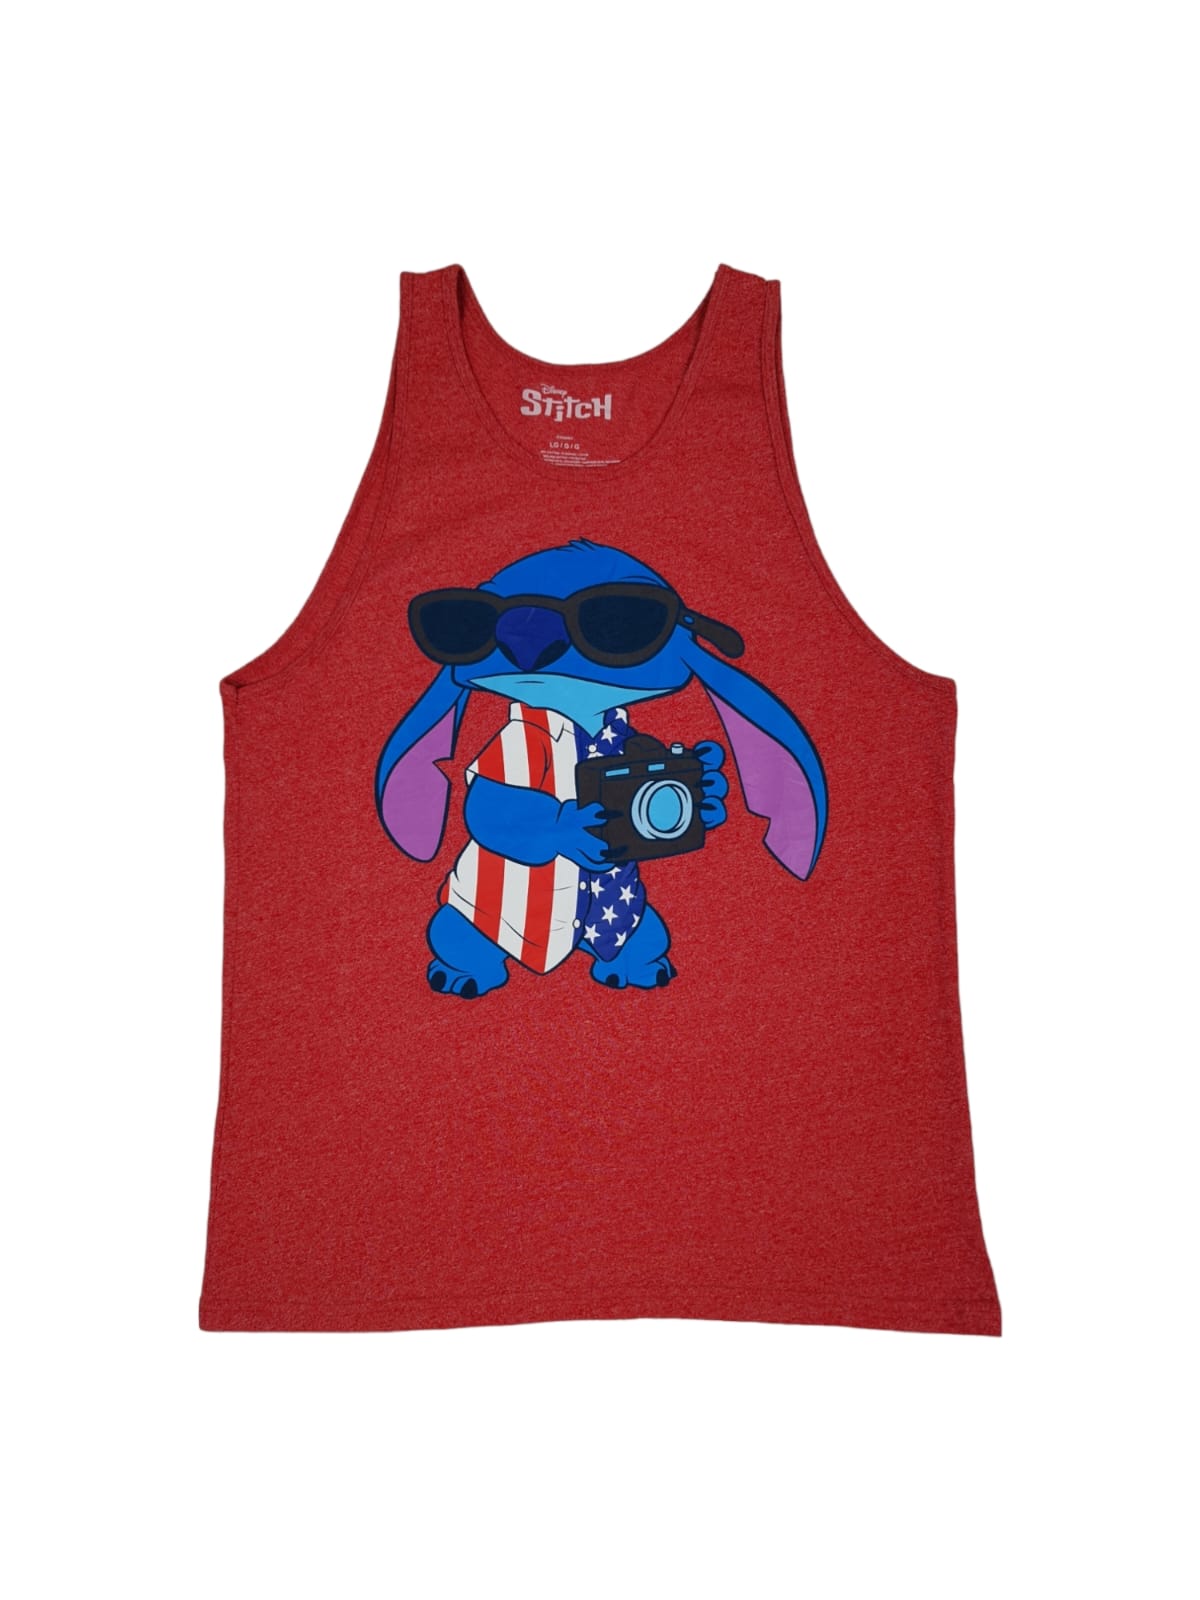 Disney Stitch Red Tank Top (L)